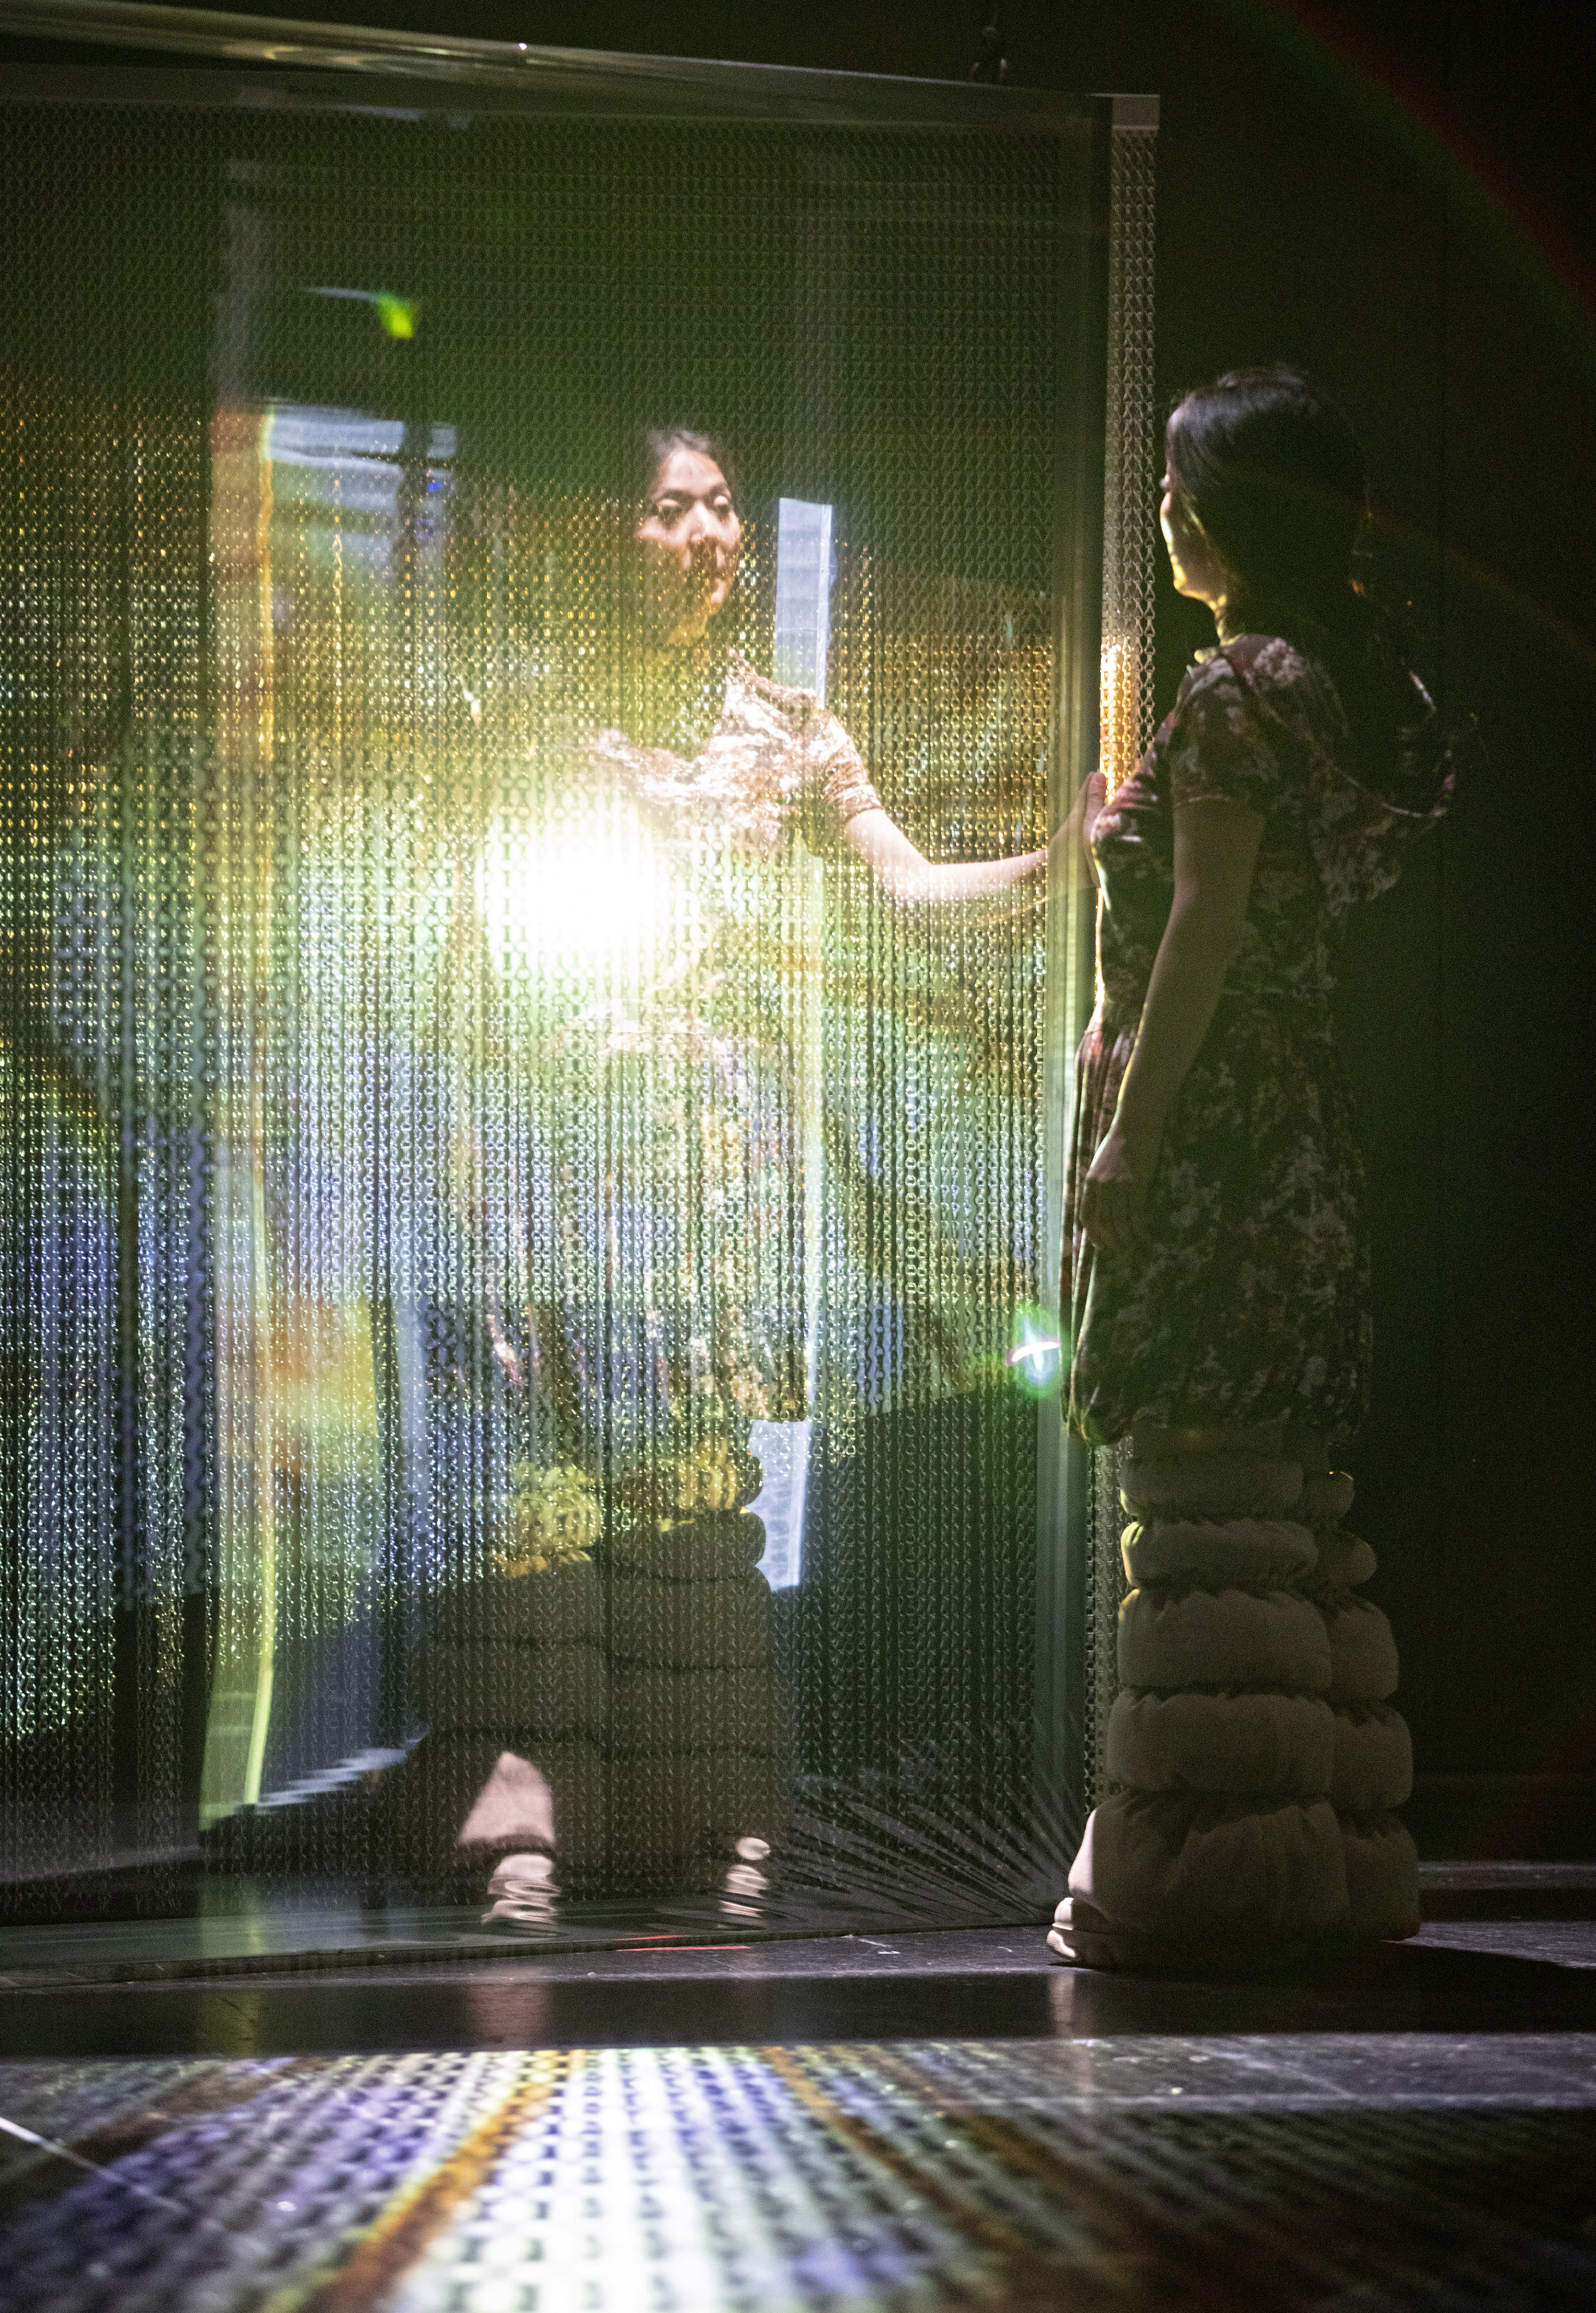 Das Foto zeigt eine Person, die im Dunkeln auf einer Bühne steht und in einen angeleuchteten Spiegel schaut. Sie steht abgewandt zur Kamera, ihr Spiegelbild der Kamera zugewandt.